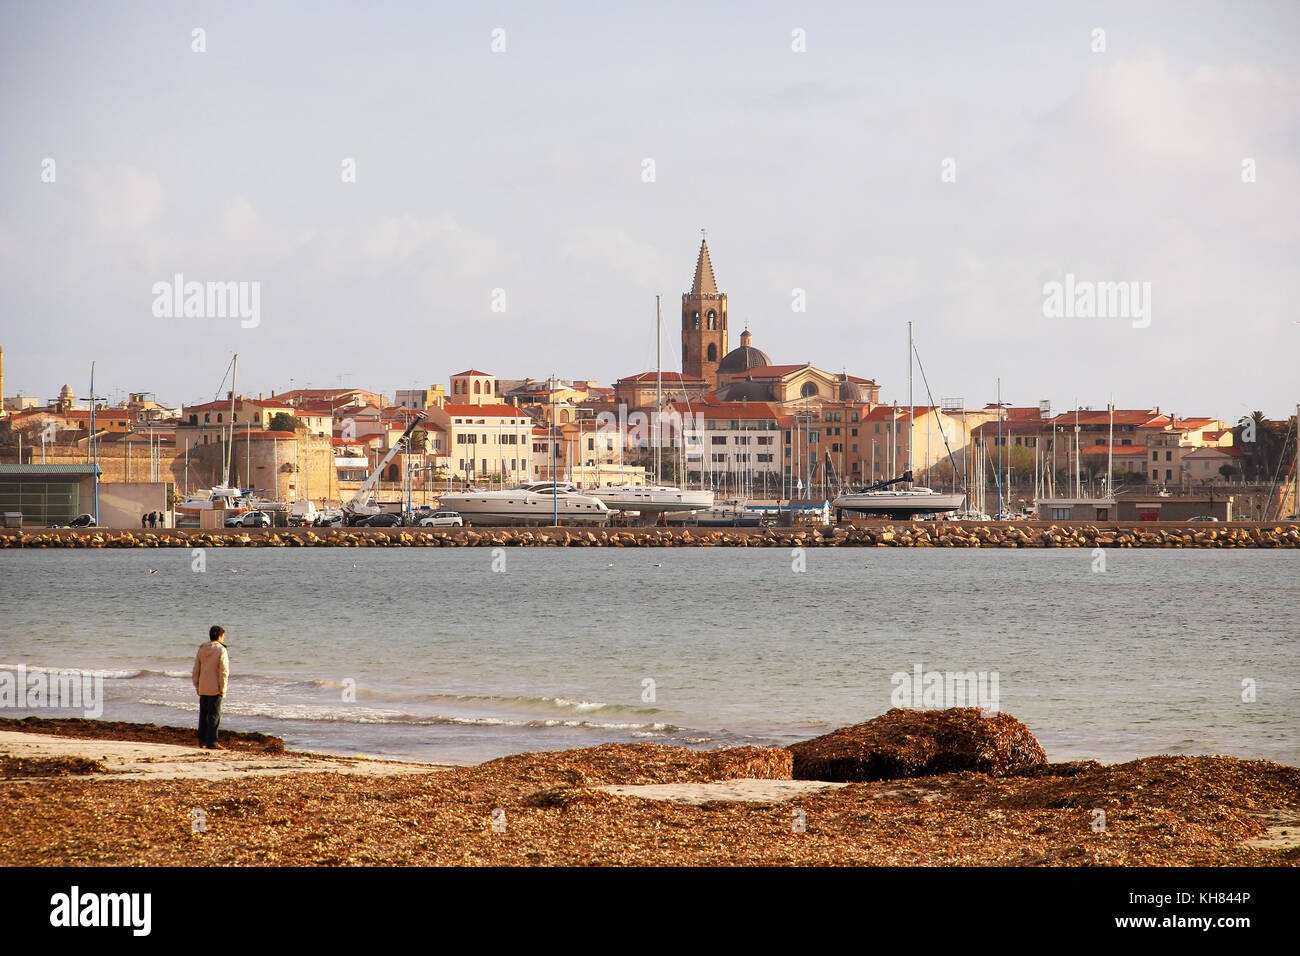 Alghero old town and Mediterranean sea, Sardinia, Italy Stock Photo